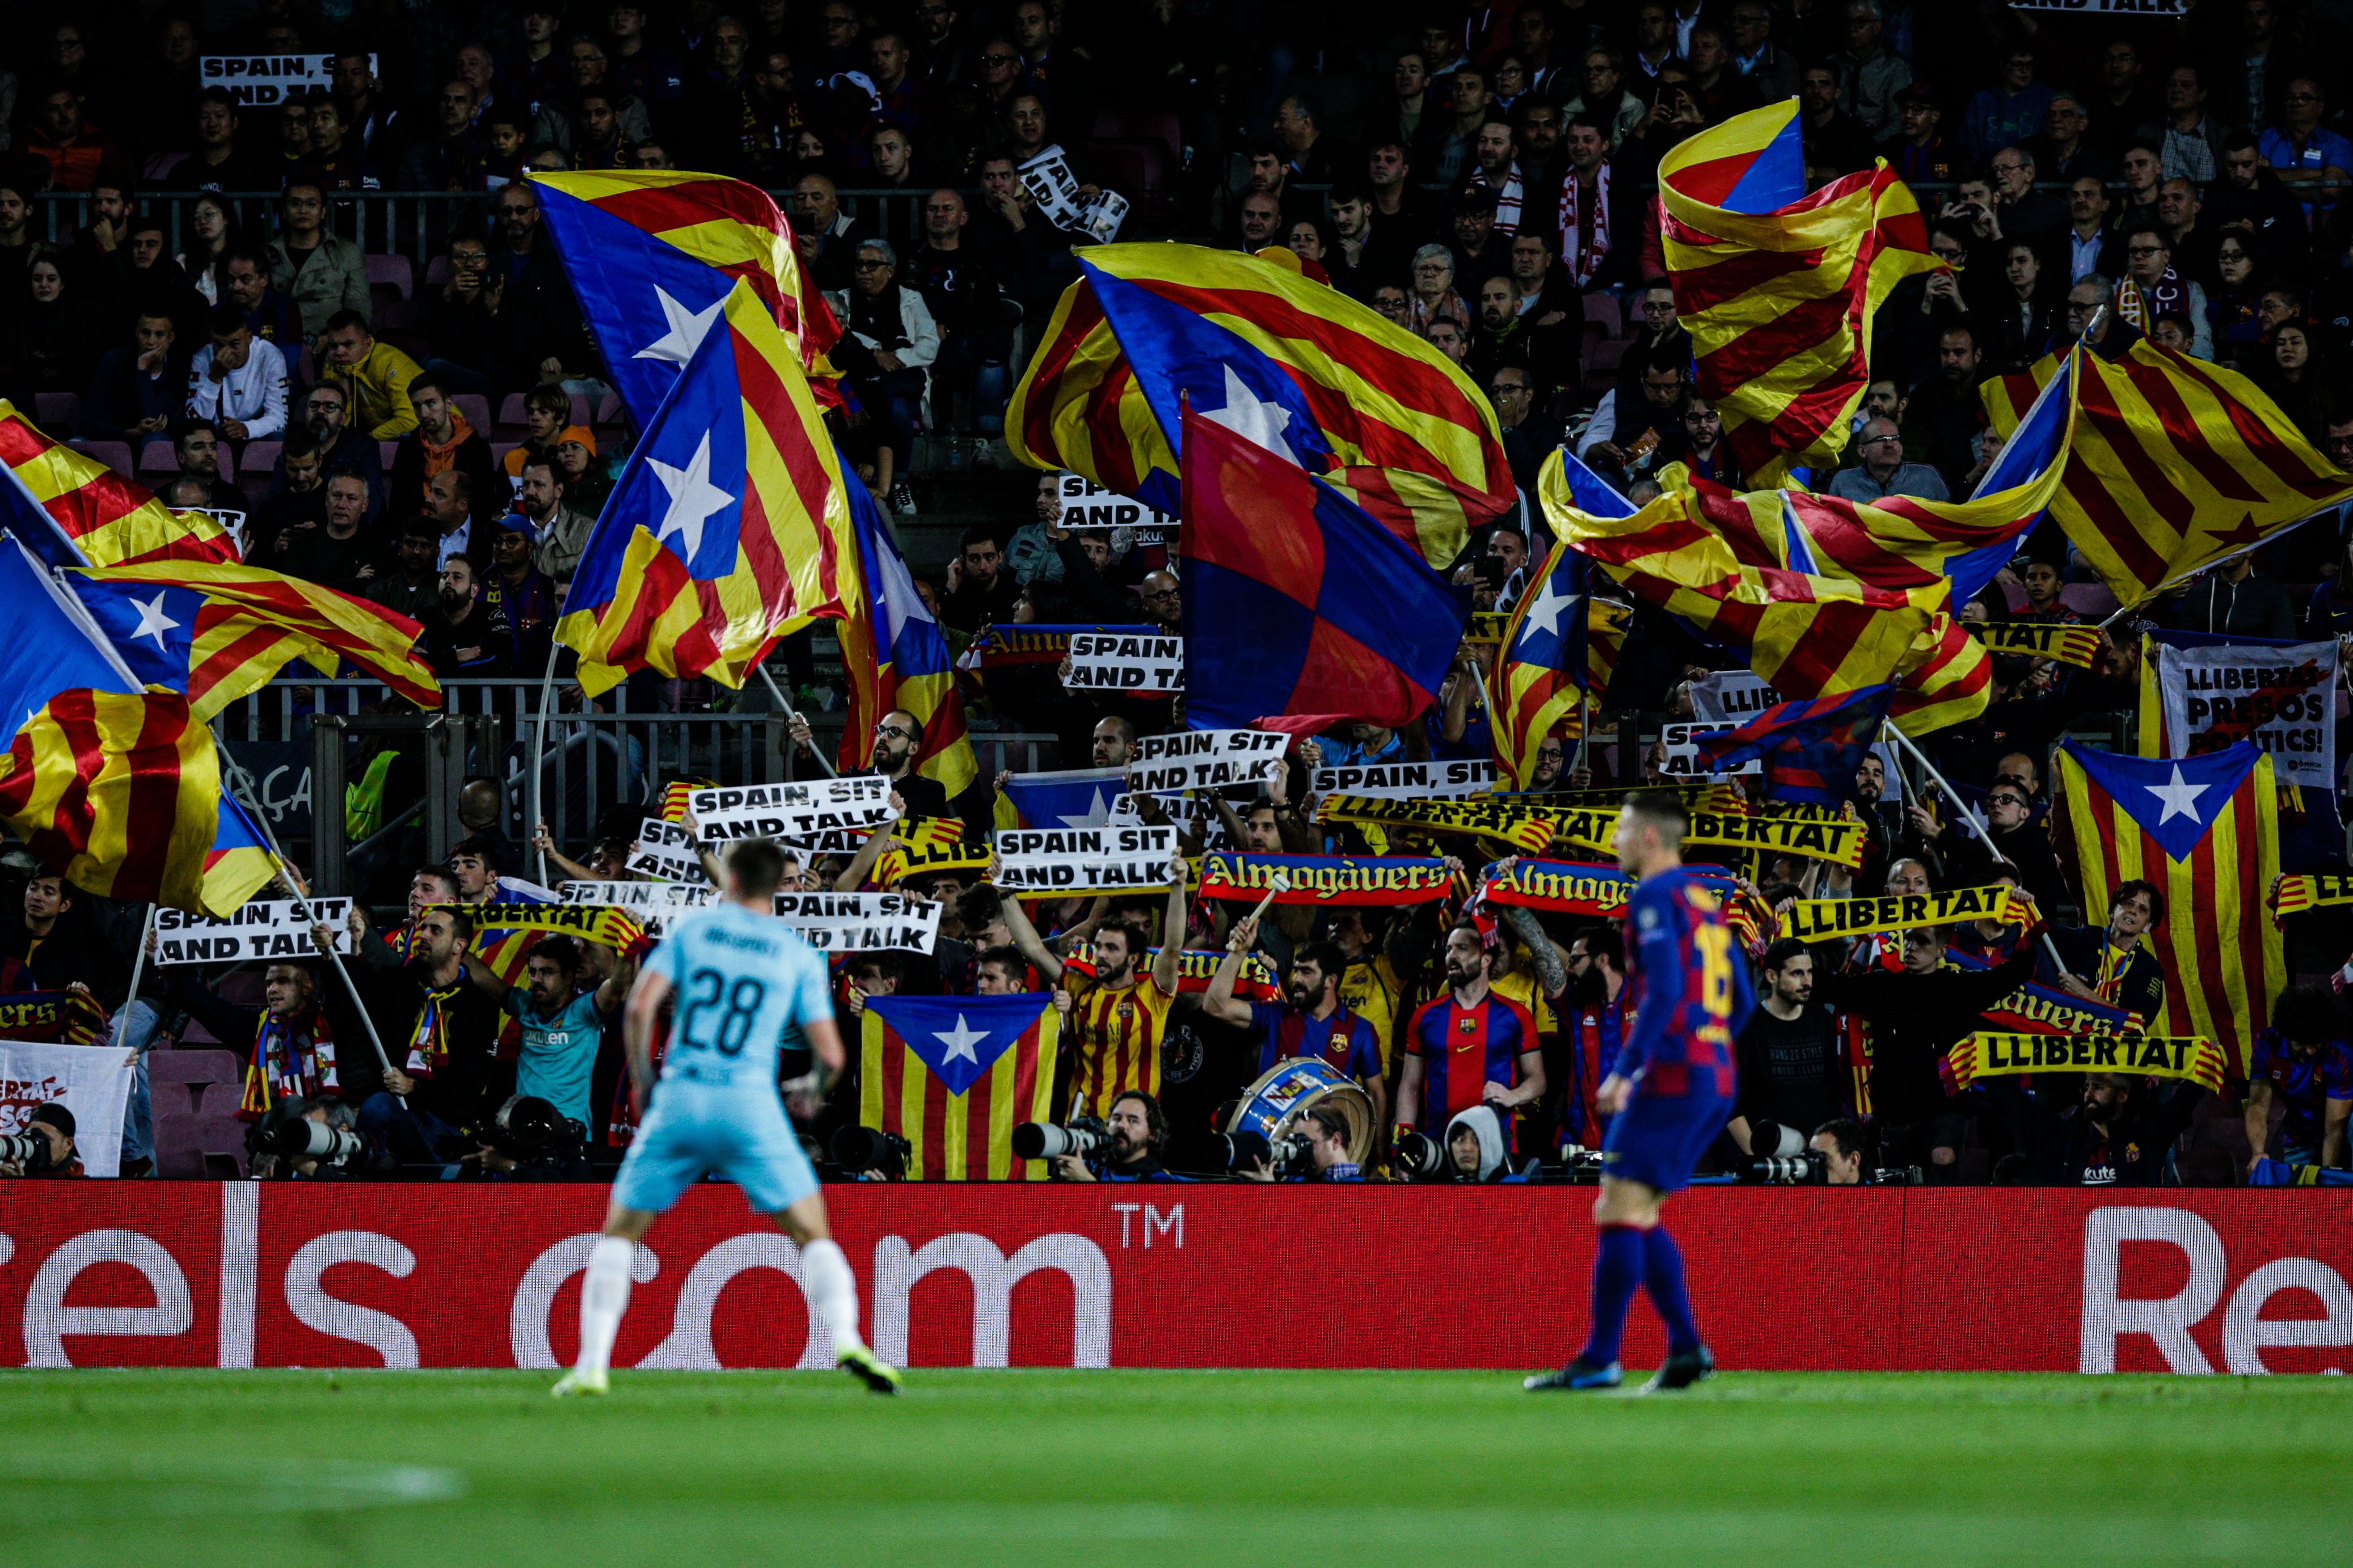 Crees que el Barça tiene que dar apoyo a la iniciativa 'Spain: ¿sit and talk'?